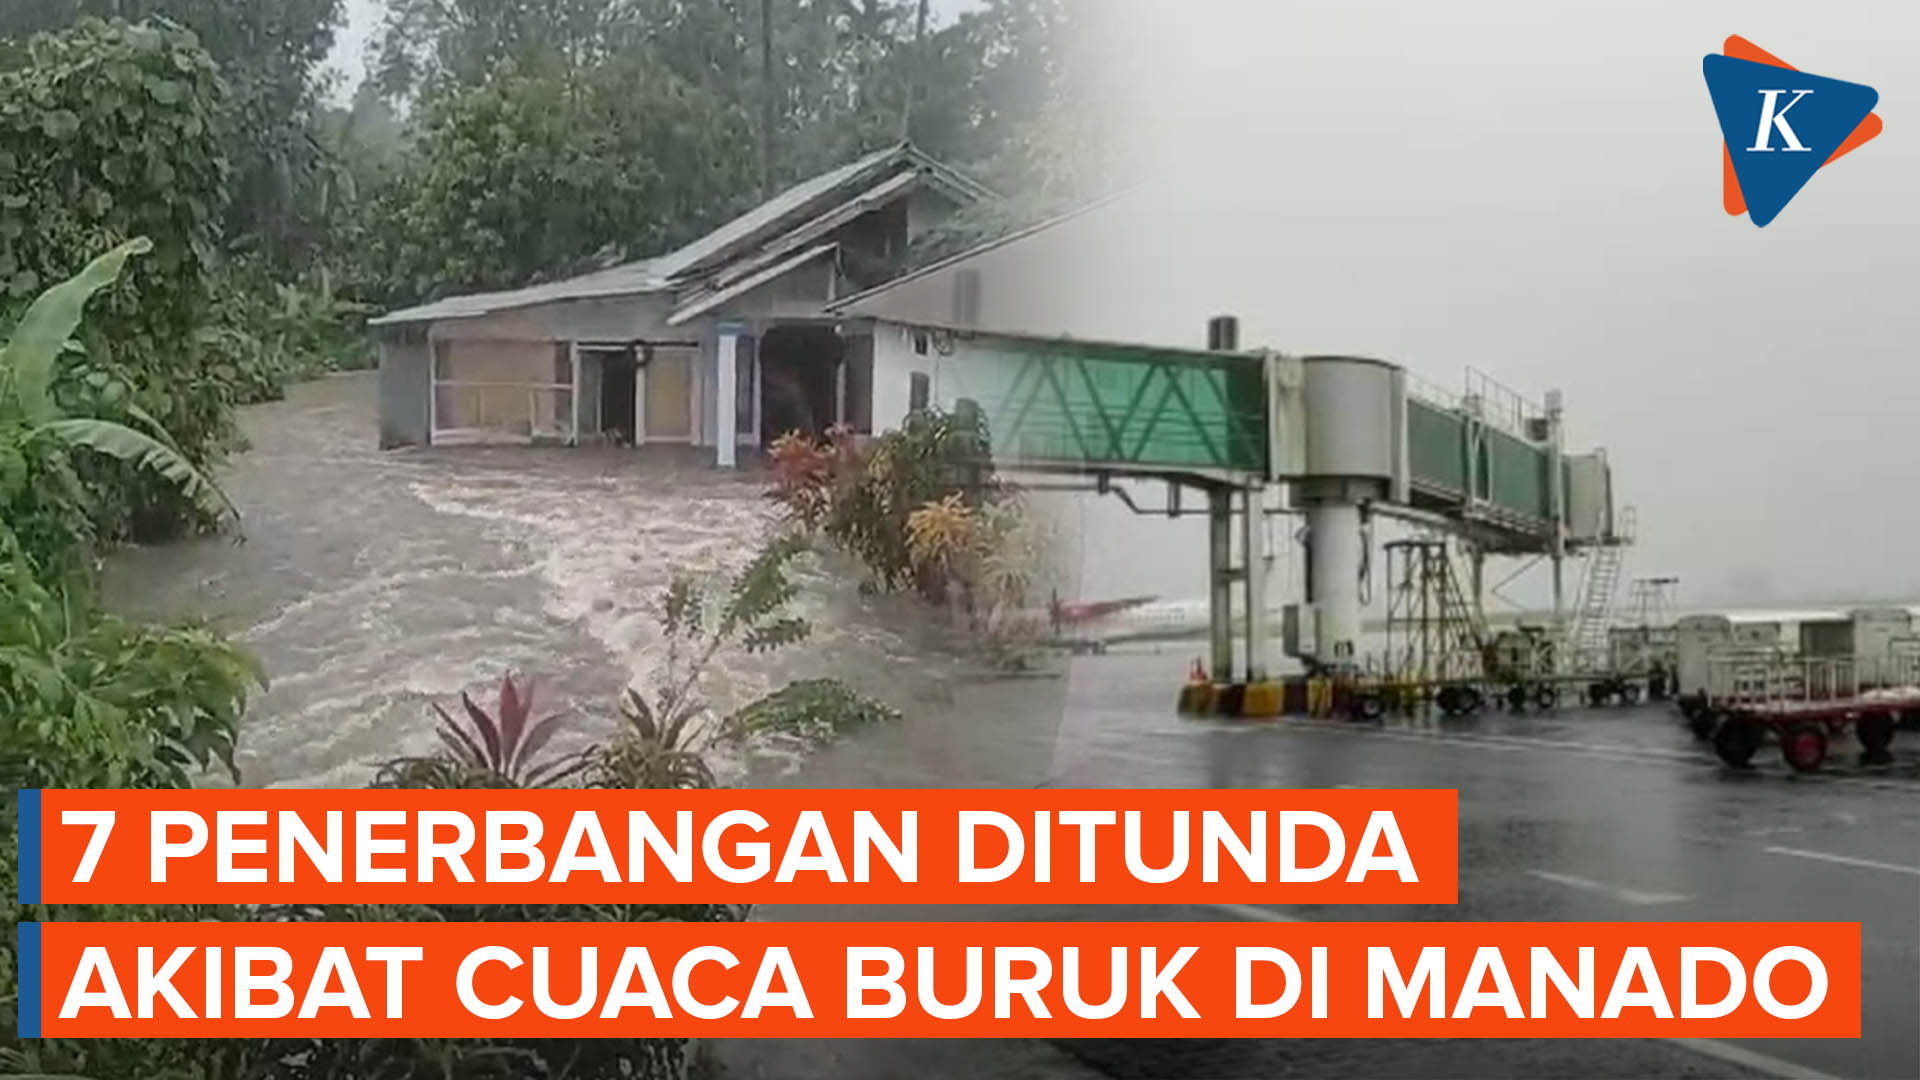 Sejumlah Wilayah di Manado Terendam Banjir, Penerbangan Terganggu